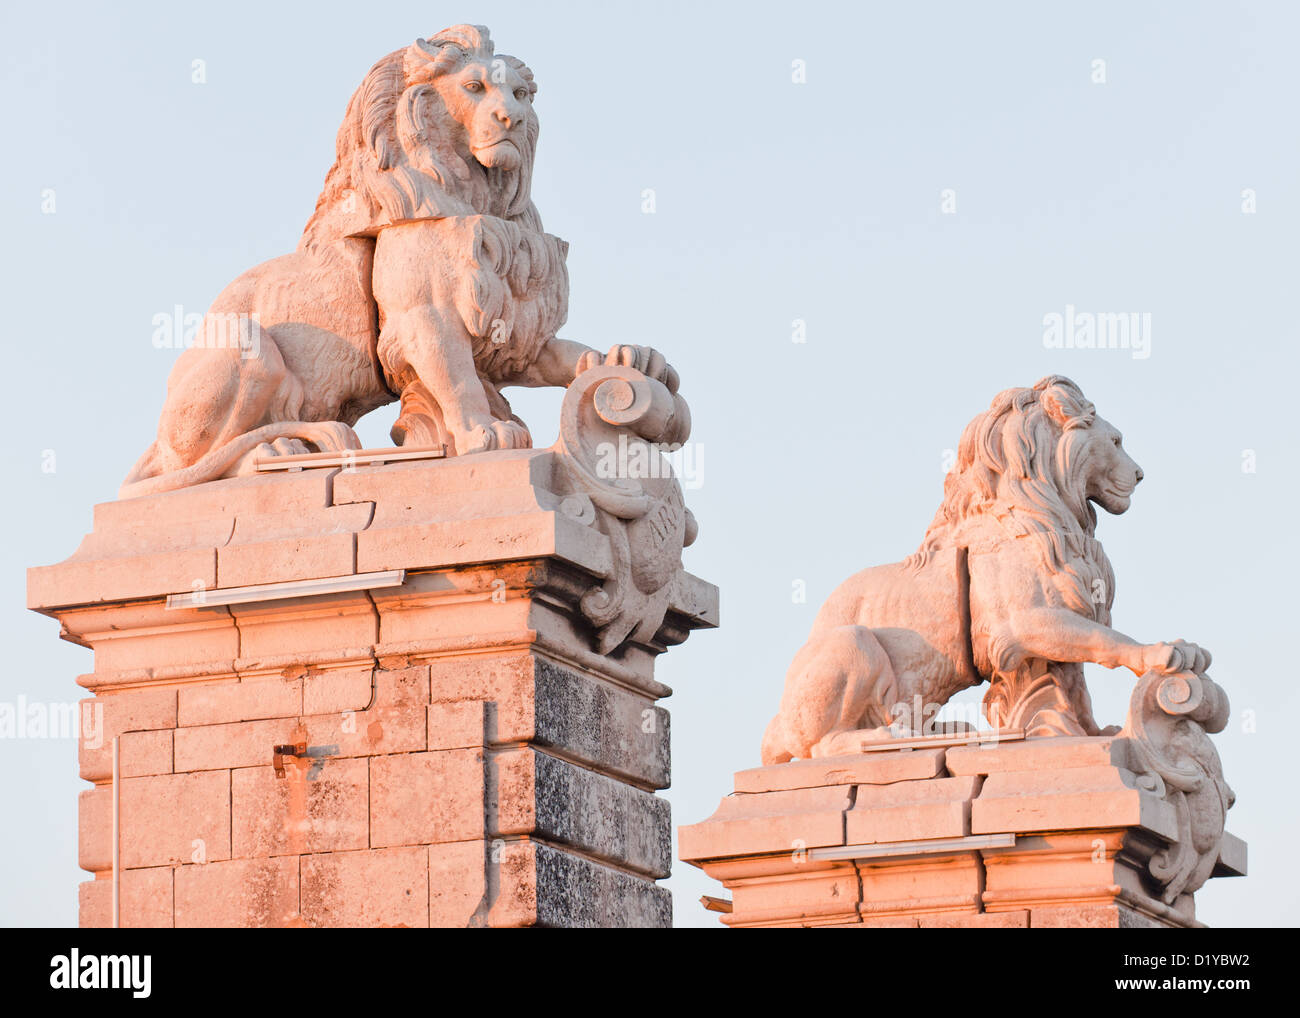 Deux majestueux Lion en pierre sculptures dans la ville d'Arles, France. Un côté est bien éclairée par le coucher du soleil orange. Banque D'Images